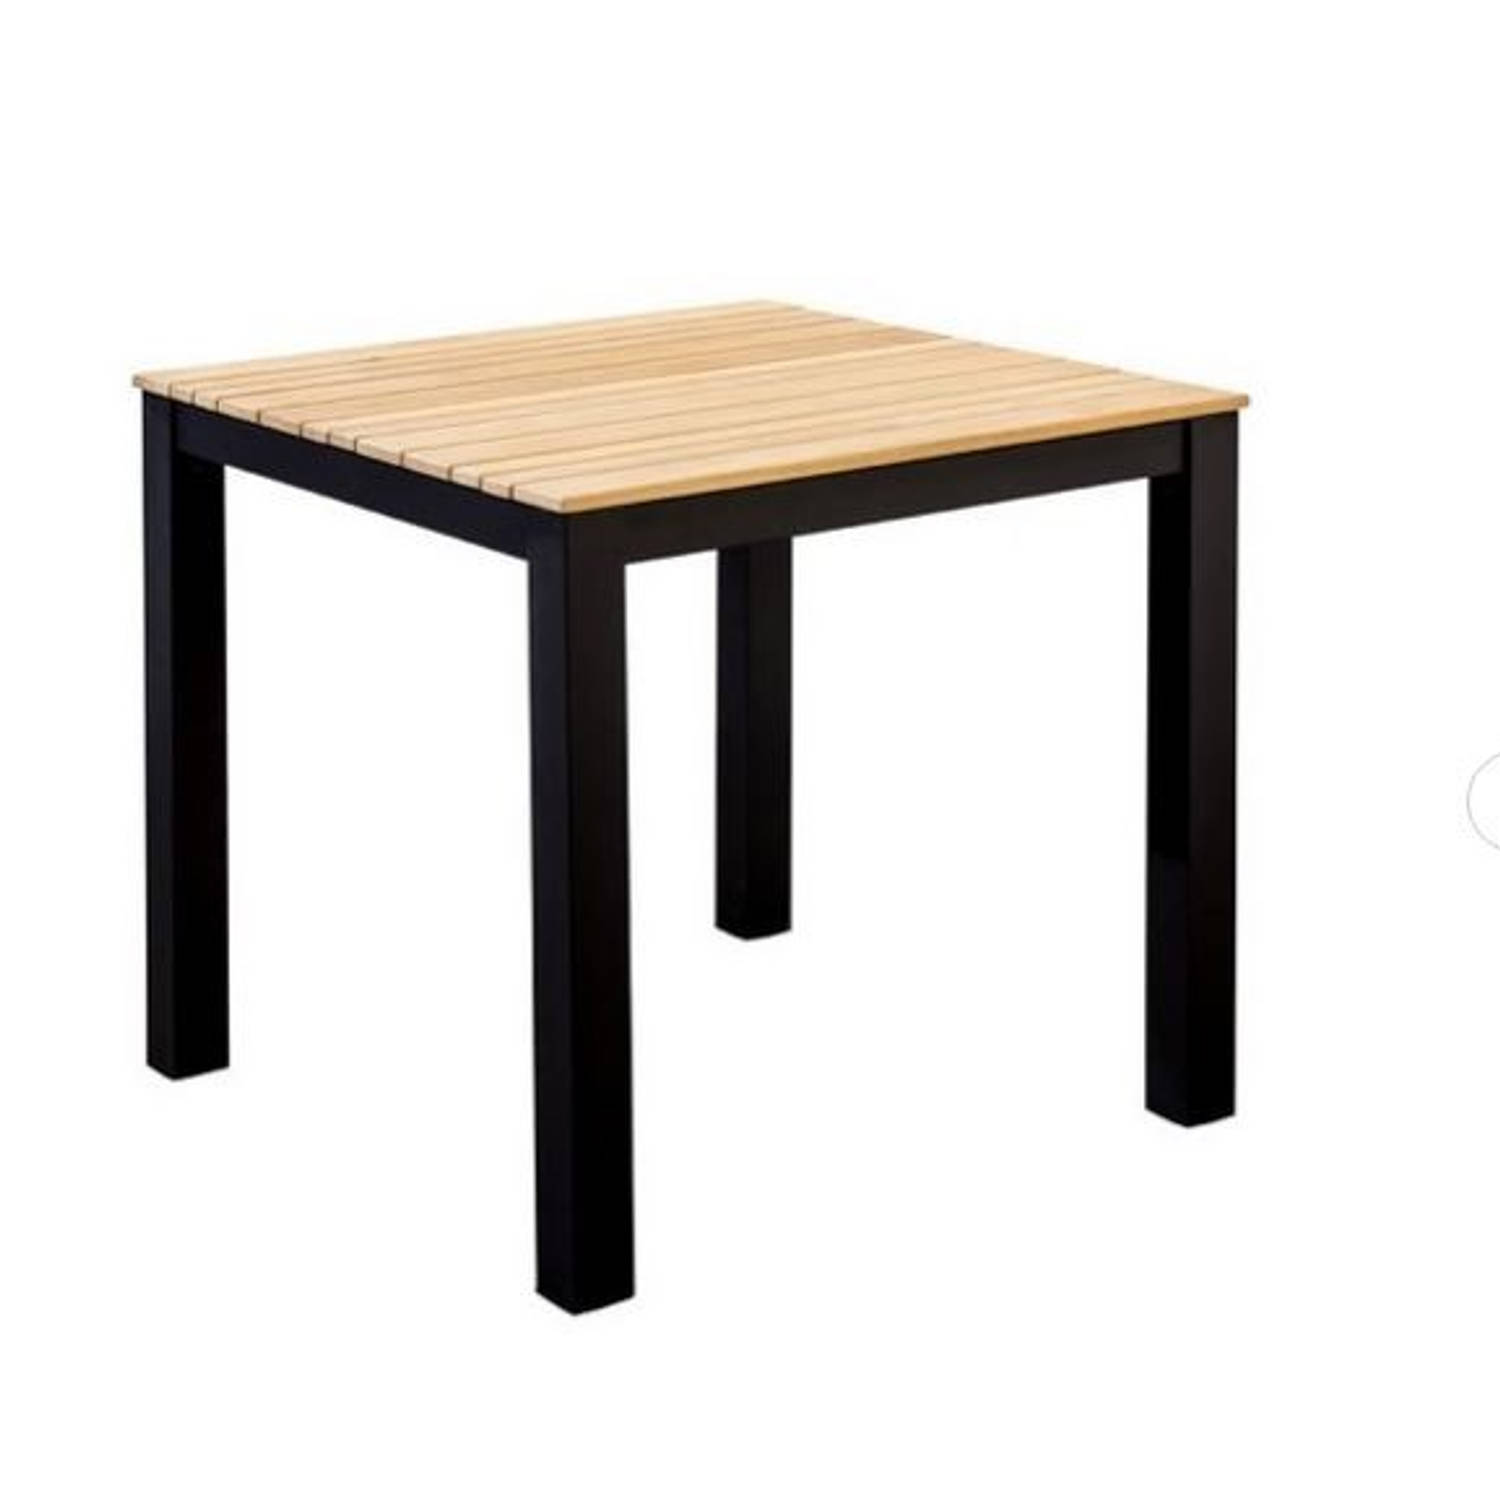 Yoi - Arashi dining table 76x76cm. alu black/teak